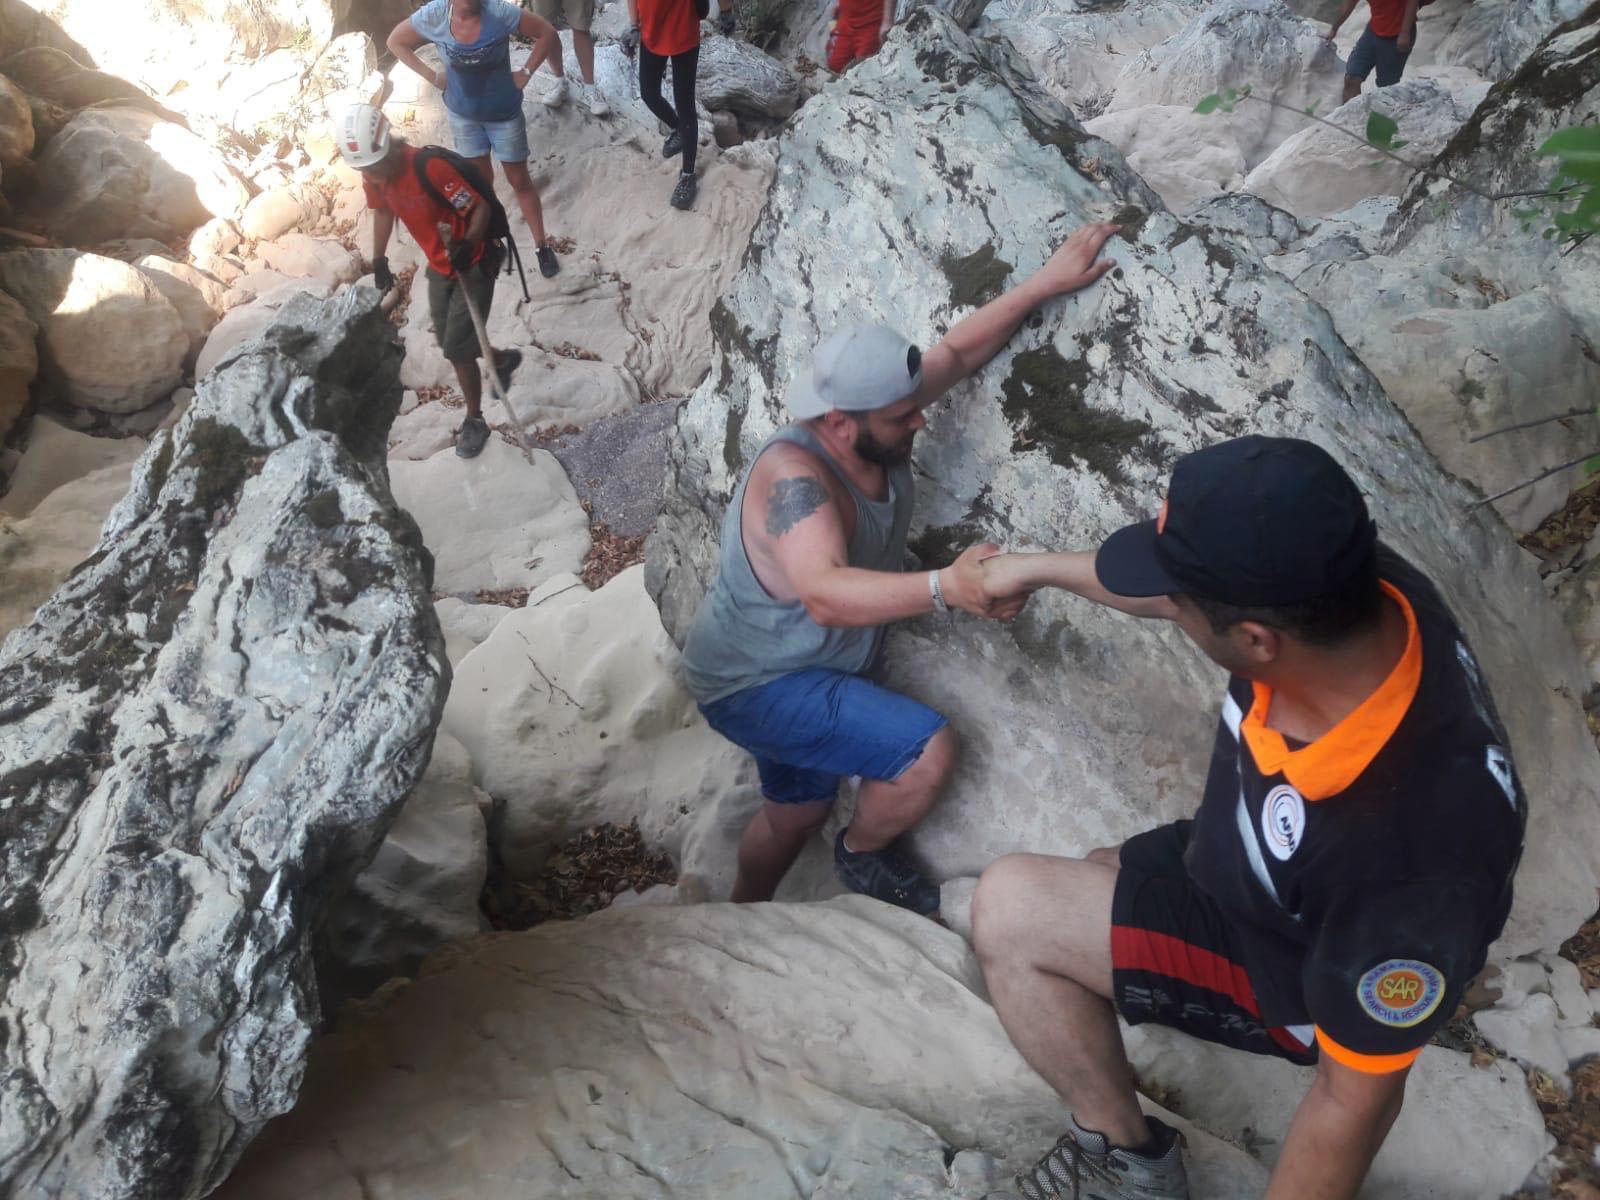 Kanyonda mahsur kalan turistlerin yardımına ekipler koştu